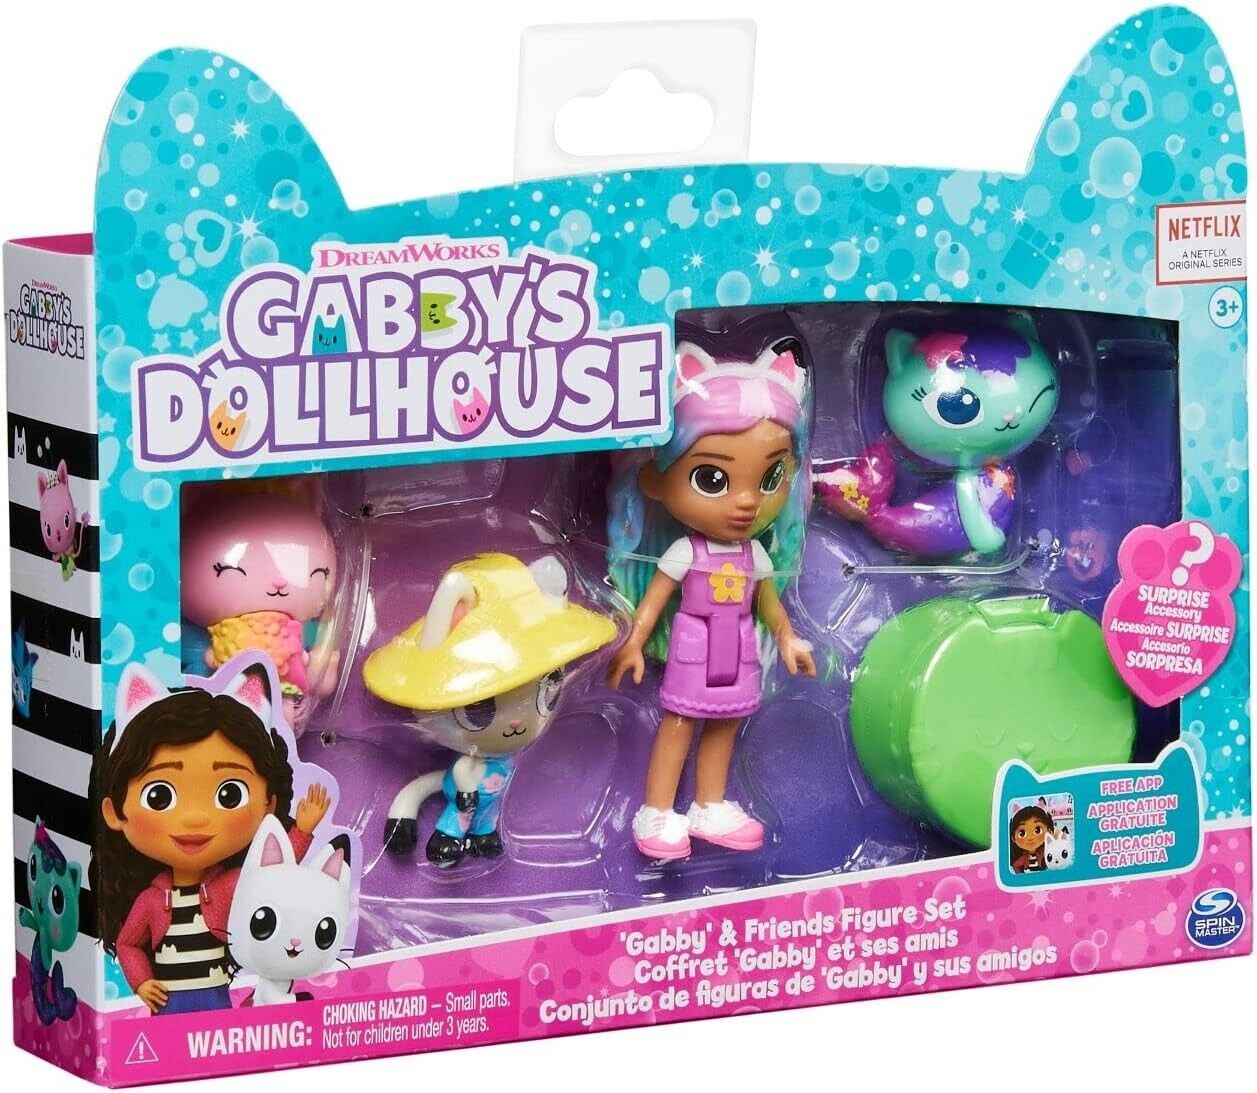 Gabby's Dollhouse 6065350 Friends Set with Rainbow Gabby Doll, Figures